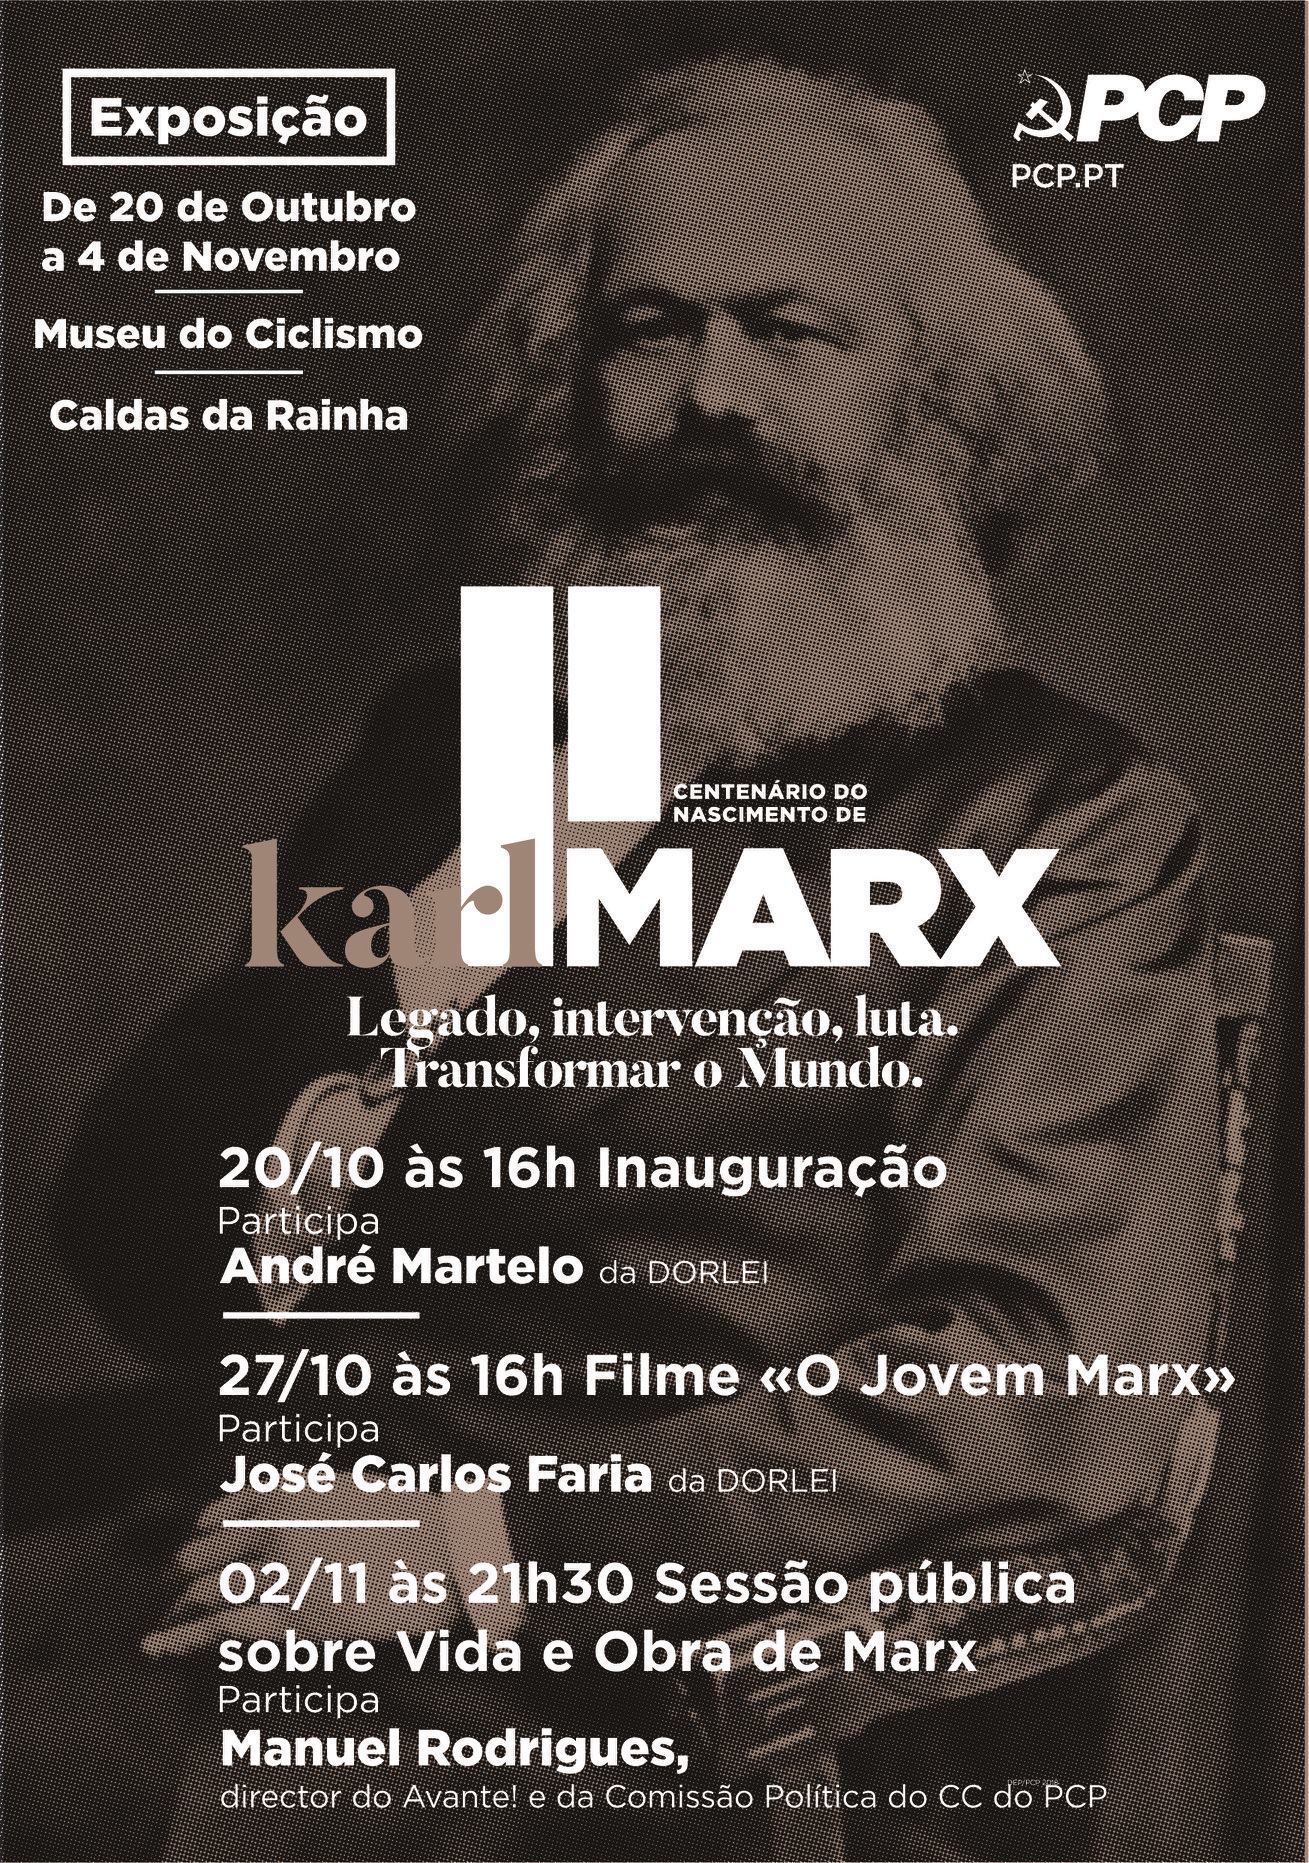 Karl Marx utställning på Museu do Ciclismo i Caldas da Rainha